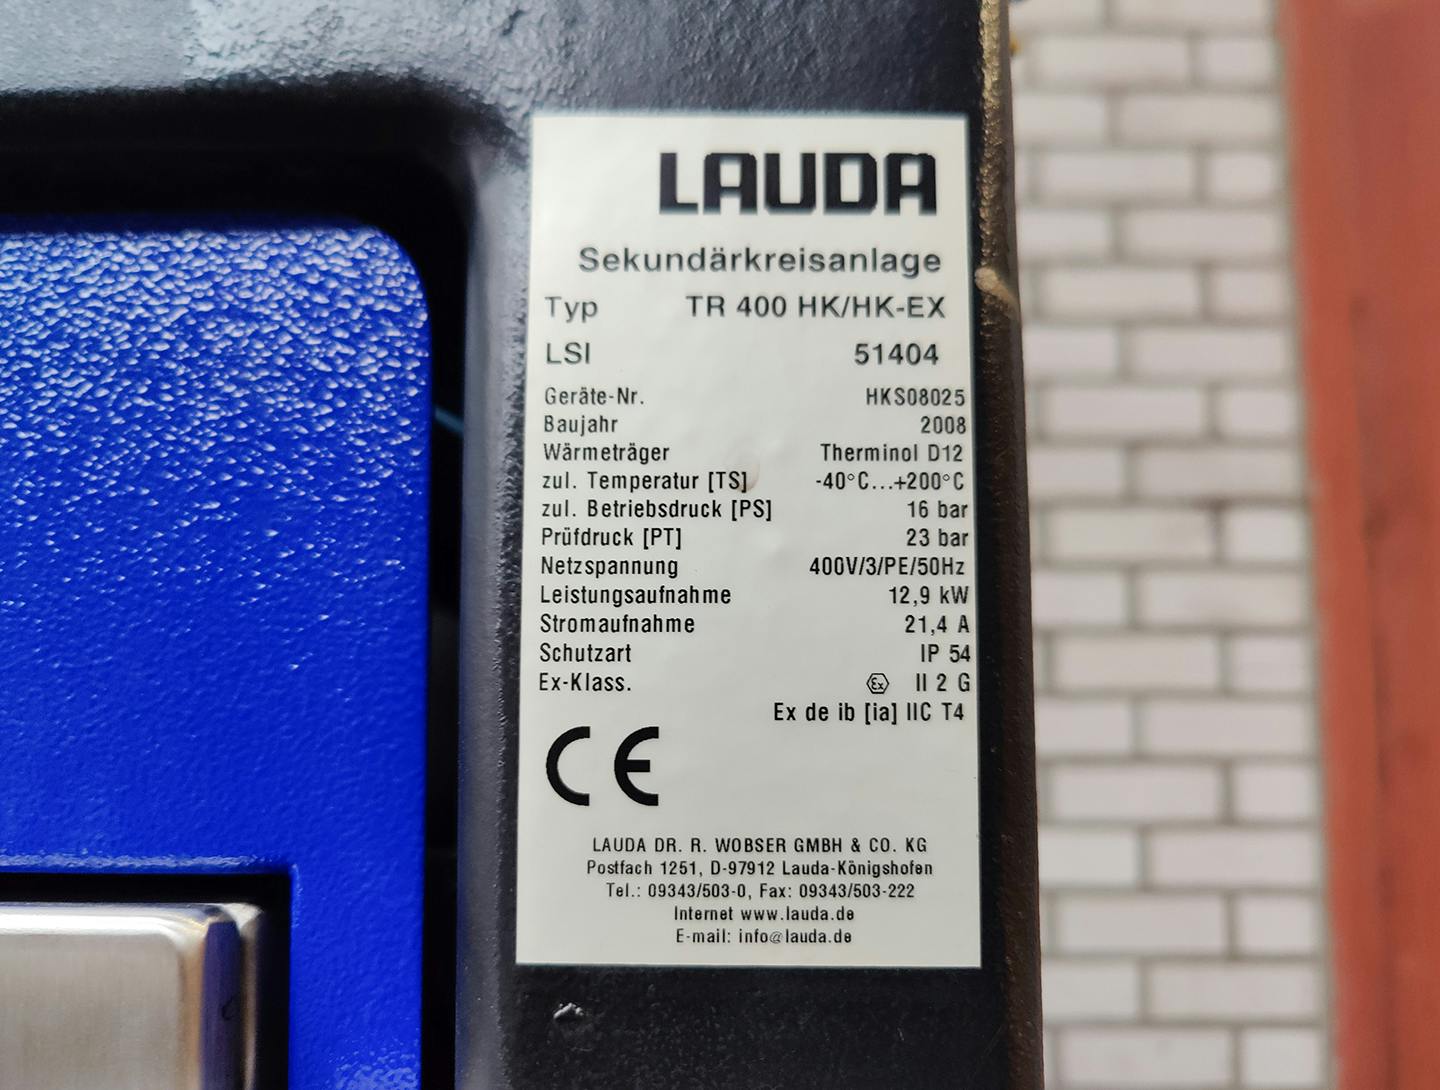 Lauda TR400 HK/HK-EX"secondary circuit system" - Atemperador - image 6